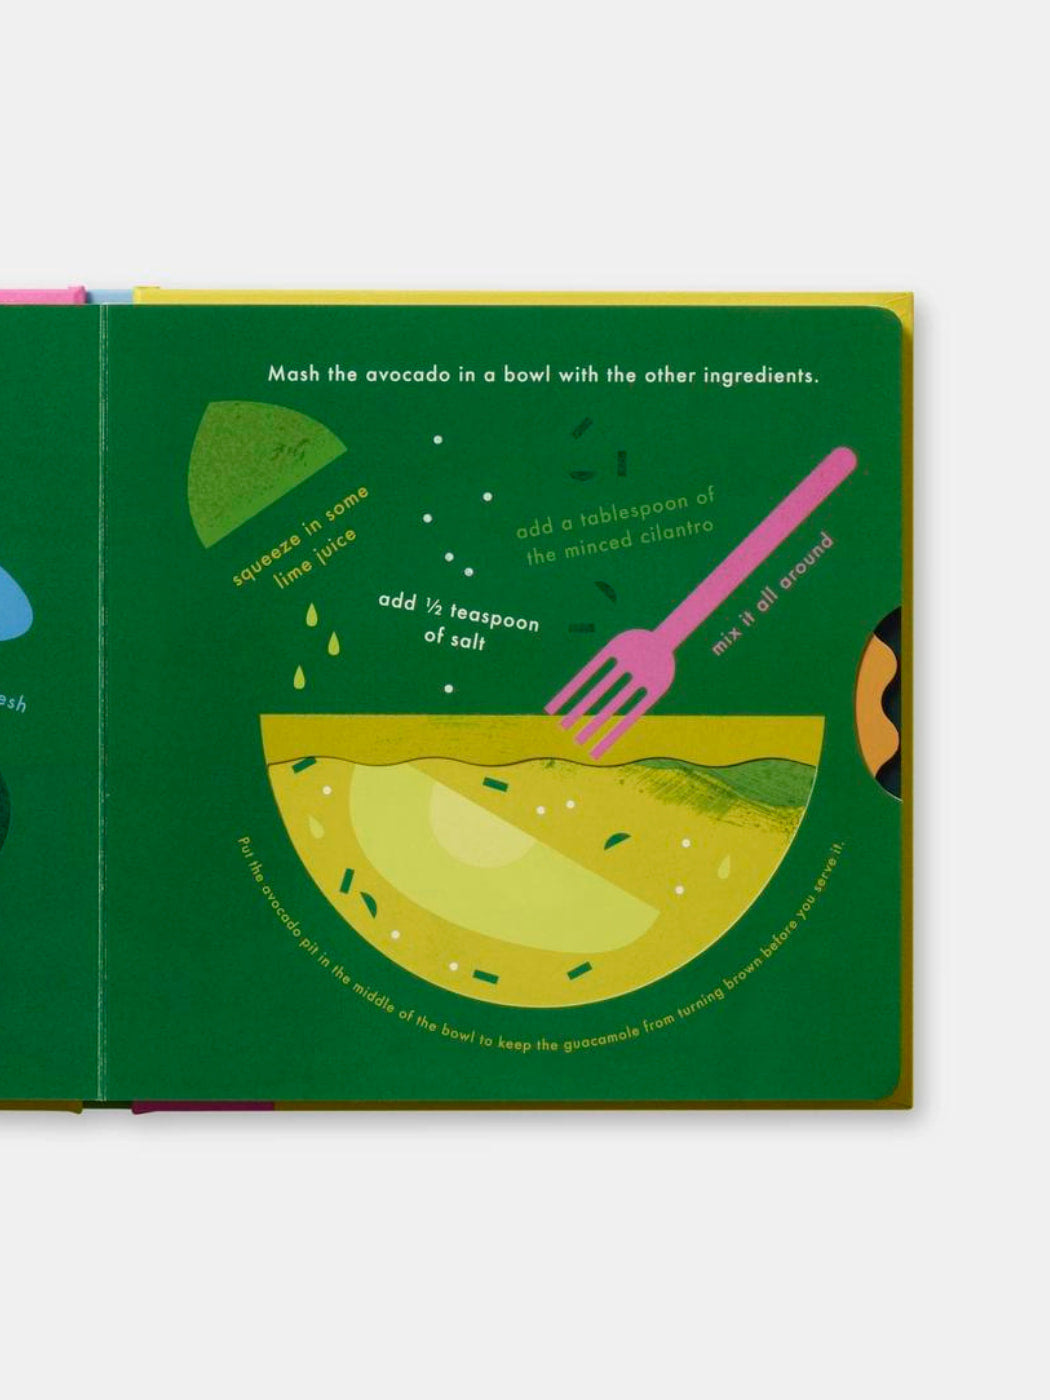 Tacos! An Interactive Recipe Book